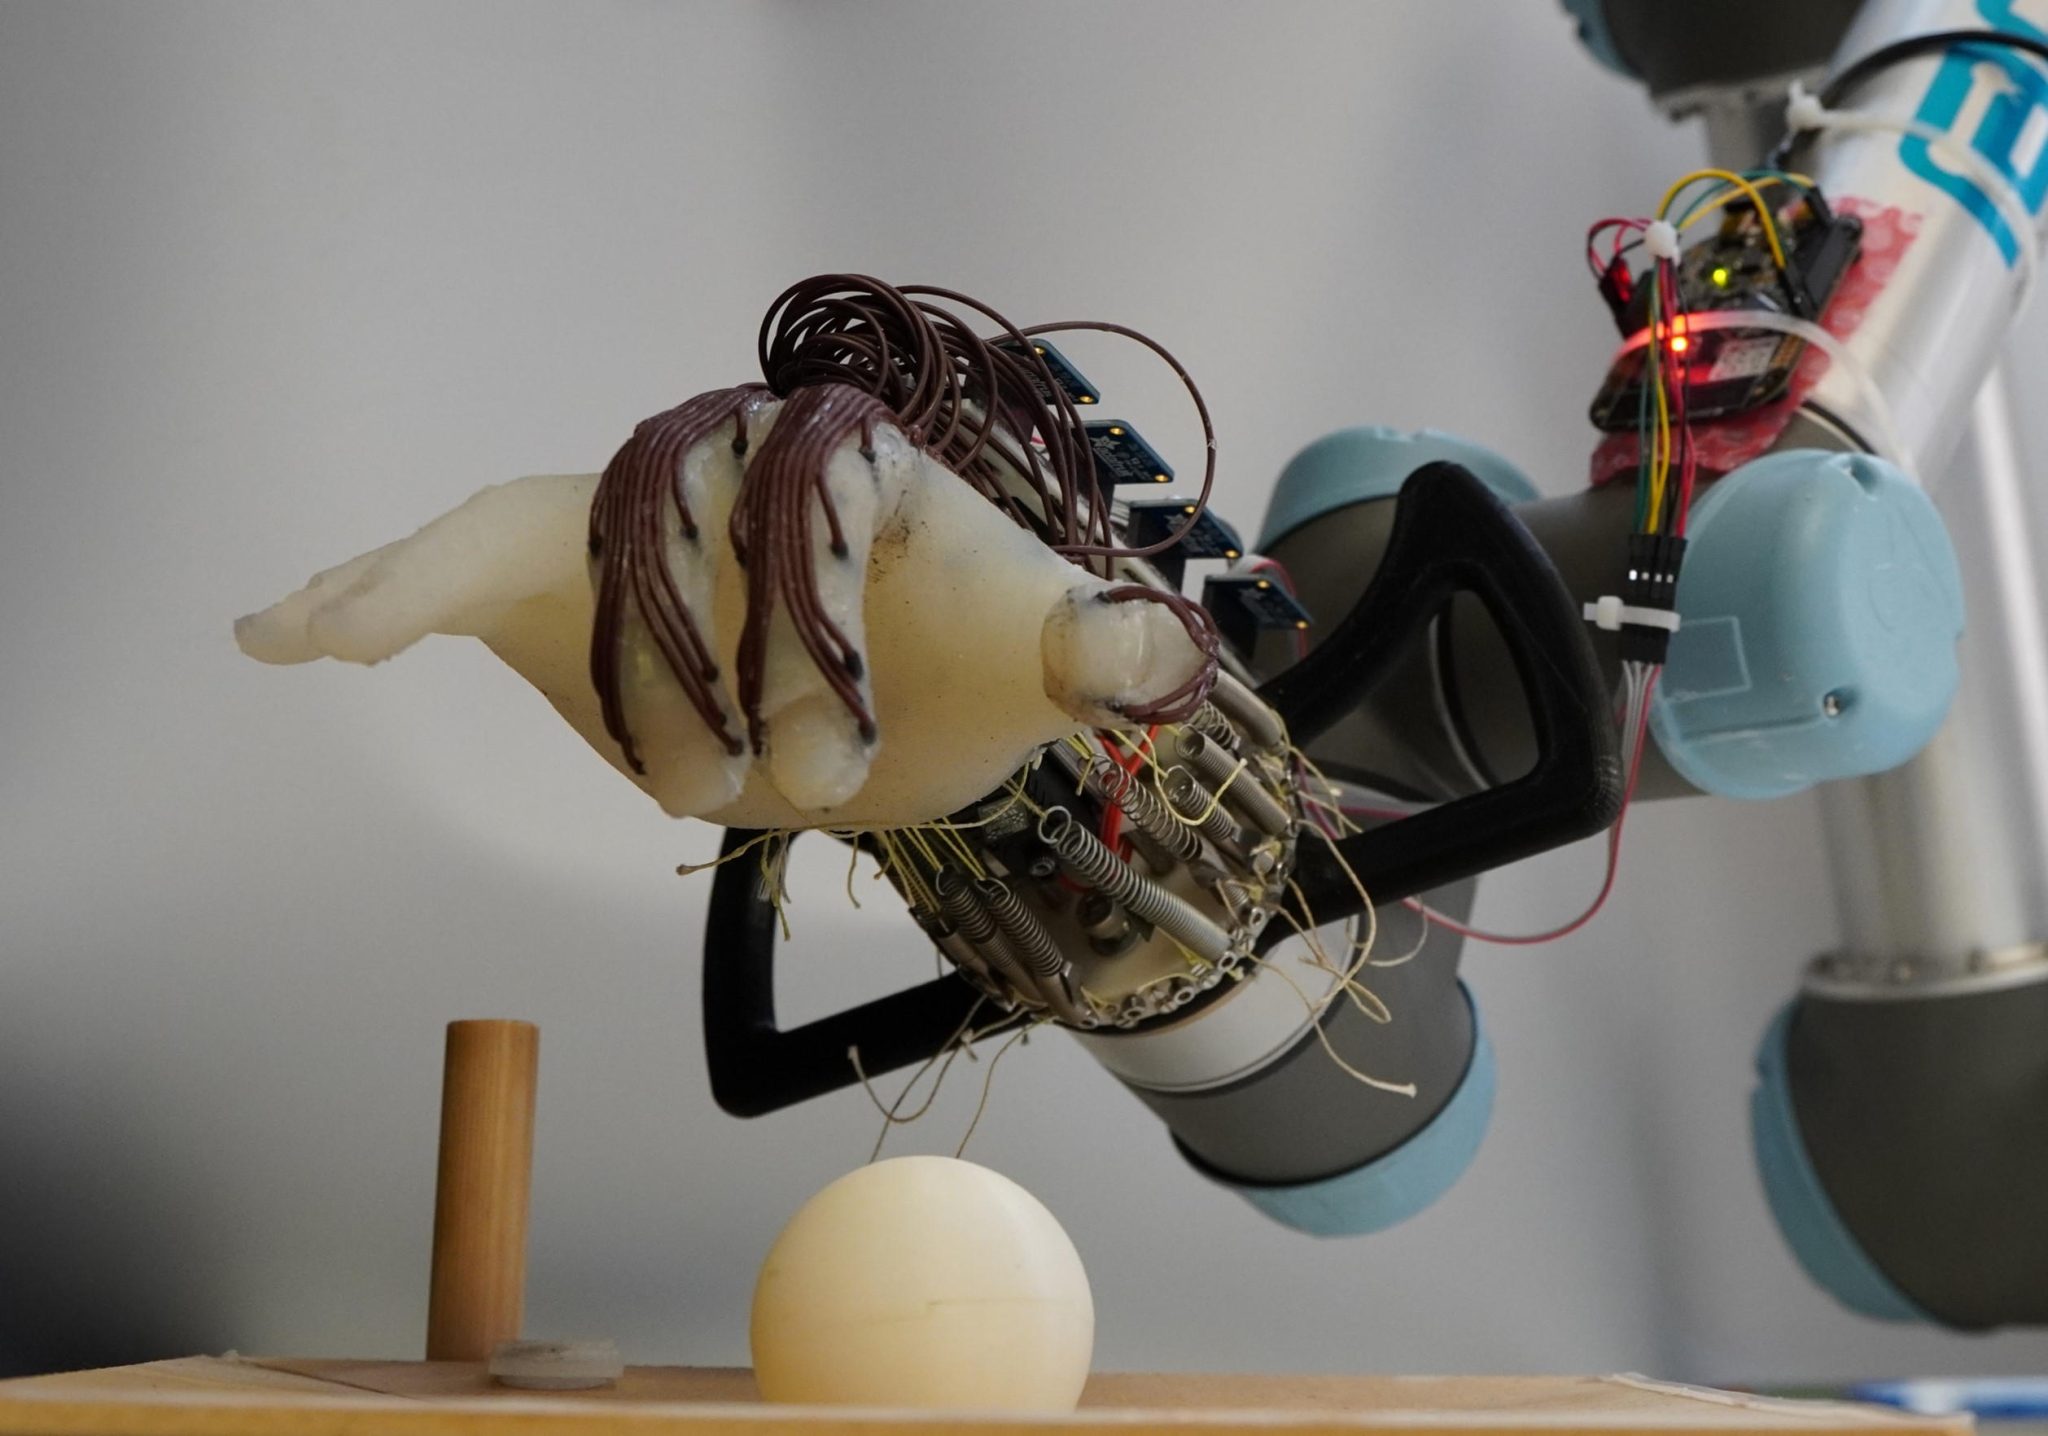 エネルギー効率の高いロボットハンドがボールを落とさない方法を学習